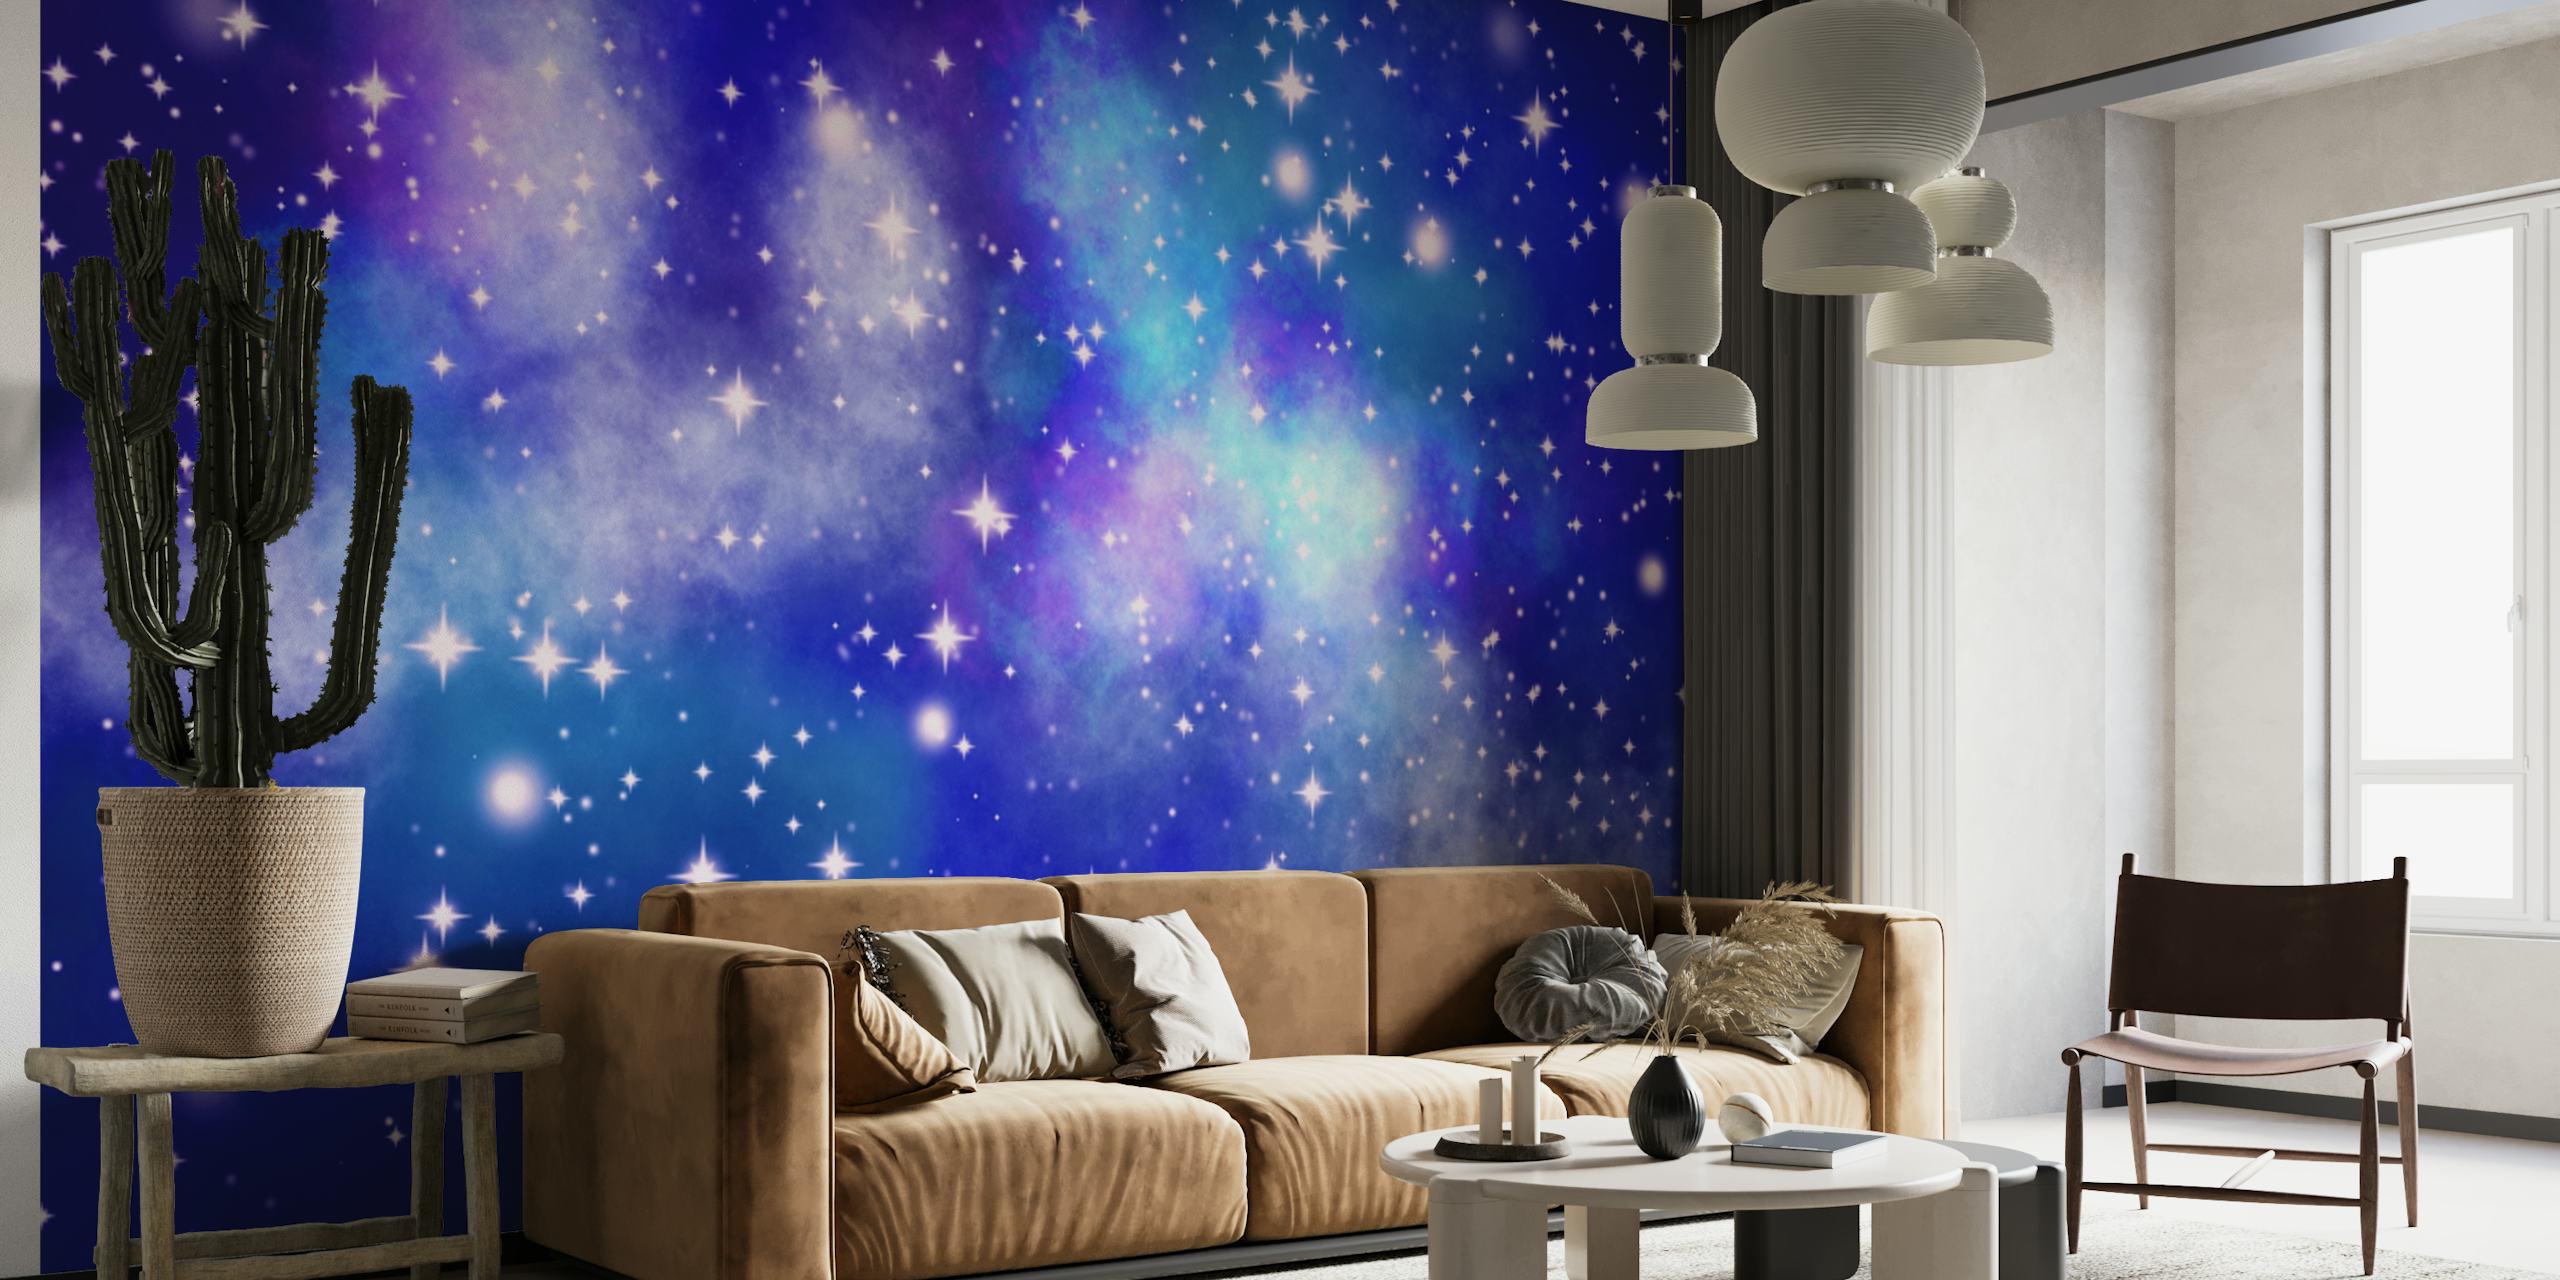 Sterrenhemel met verschillende tinten blauw en fonkelende sterren die een muurschildering met uitzicht op de Melkweg vertegenwoordigen